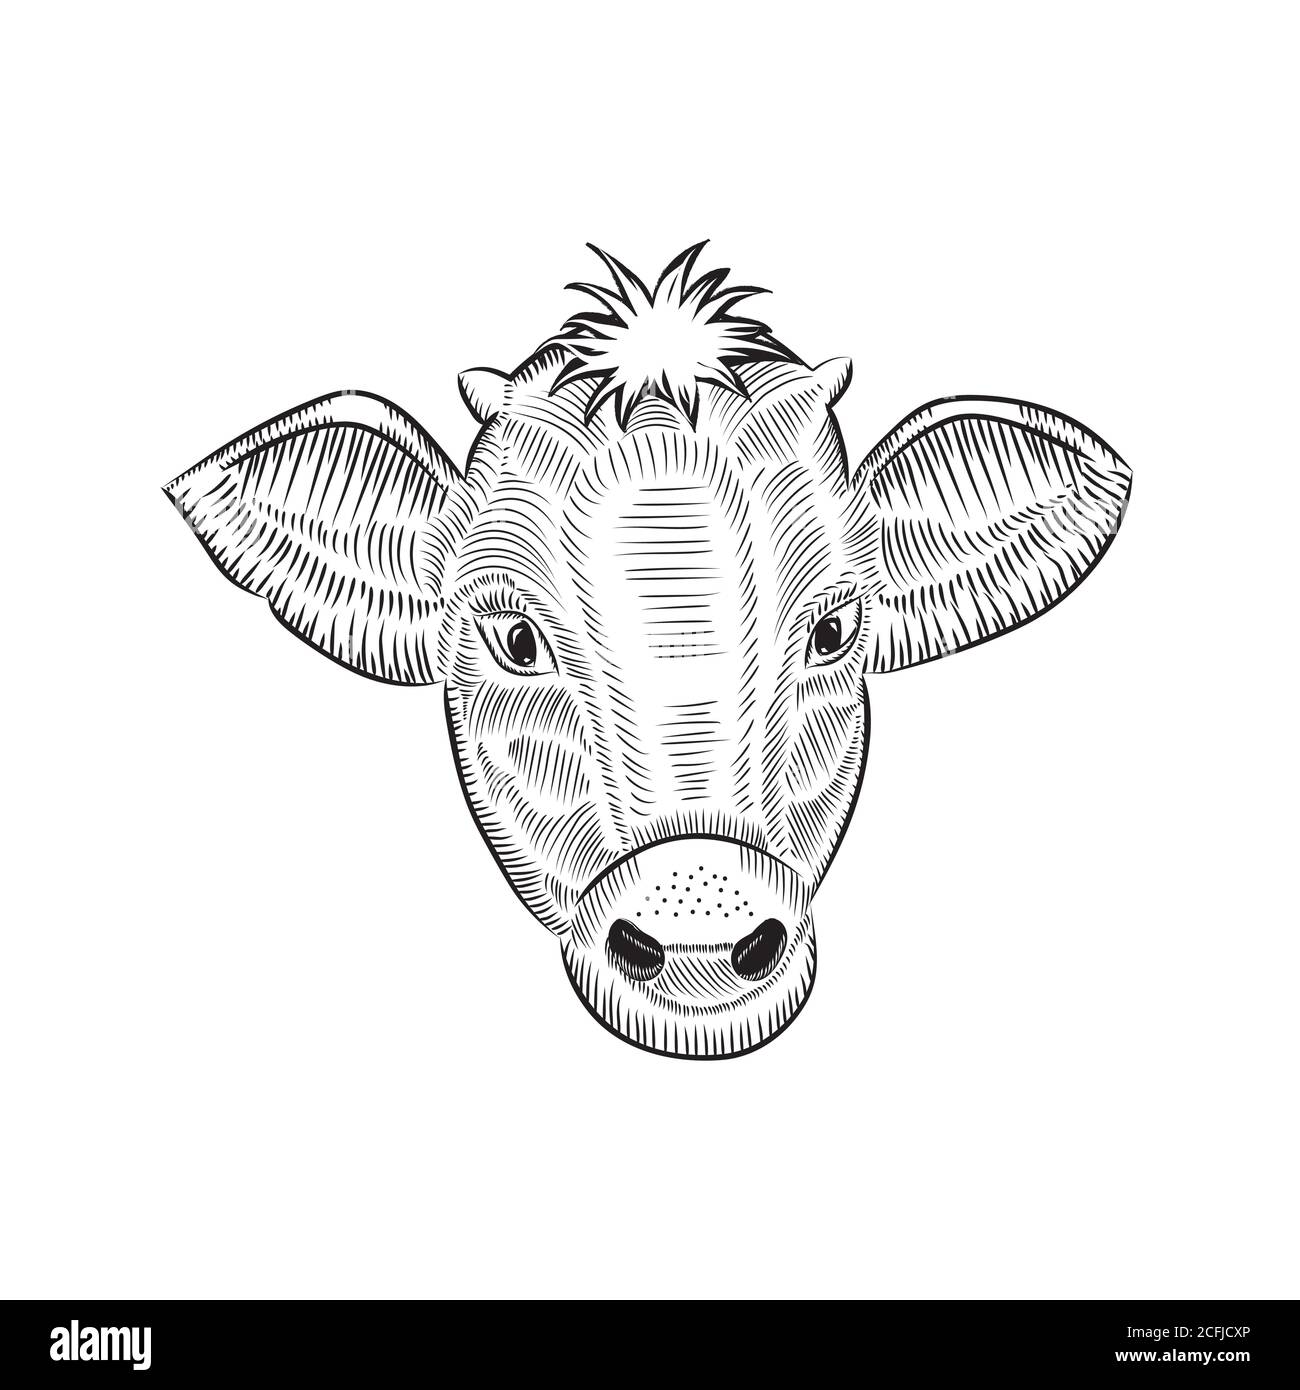 Top Closeup Cow Face Drawing Stock Vectors Illustrations  Clip Art   iStock